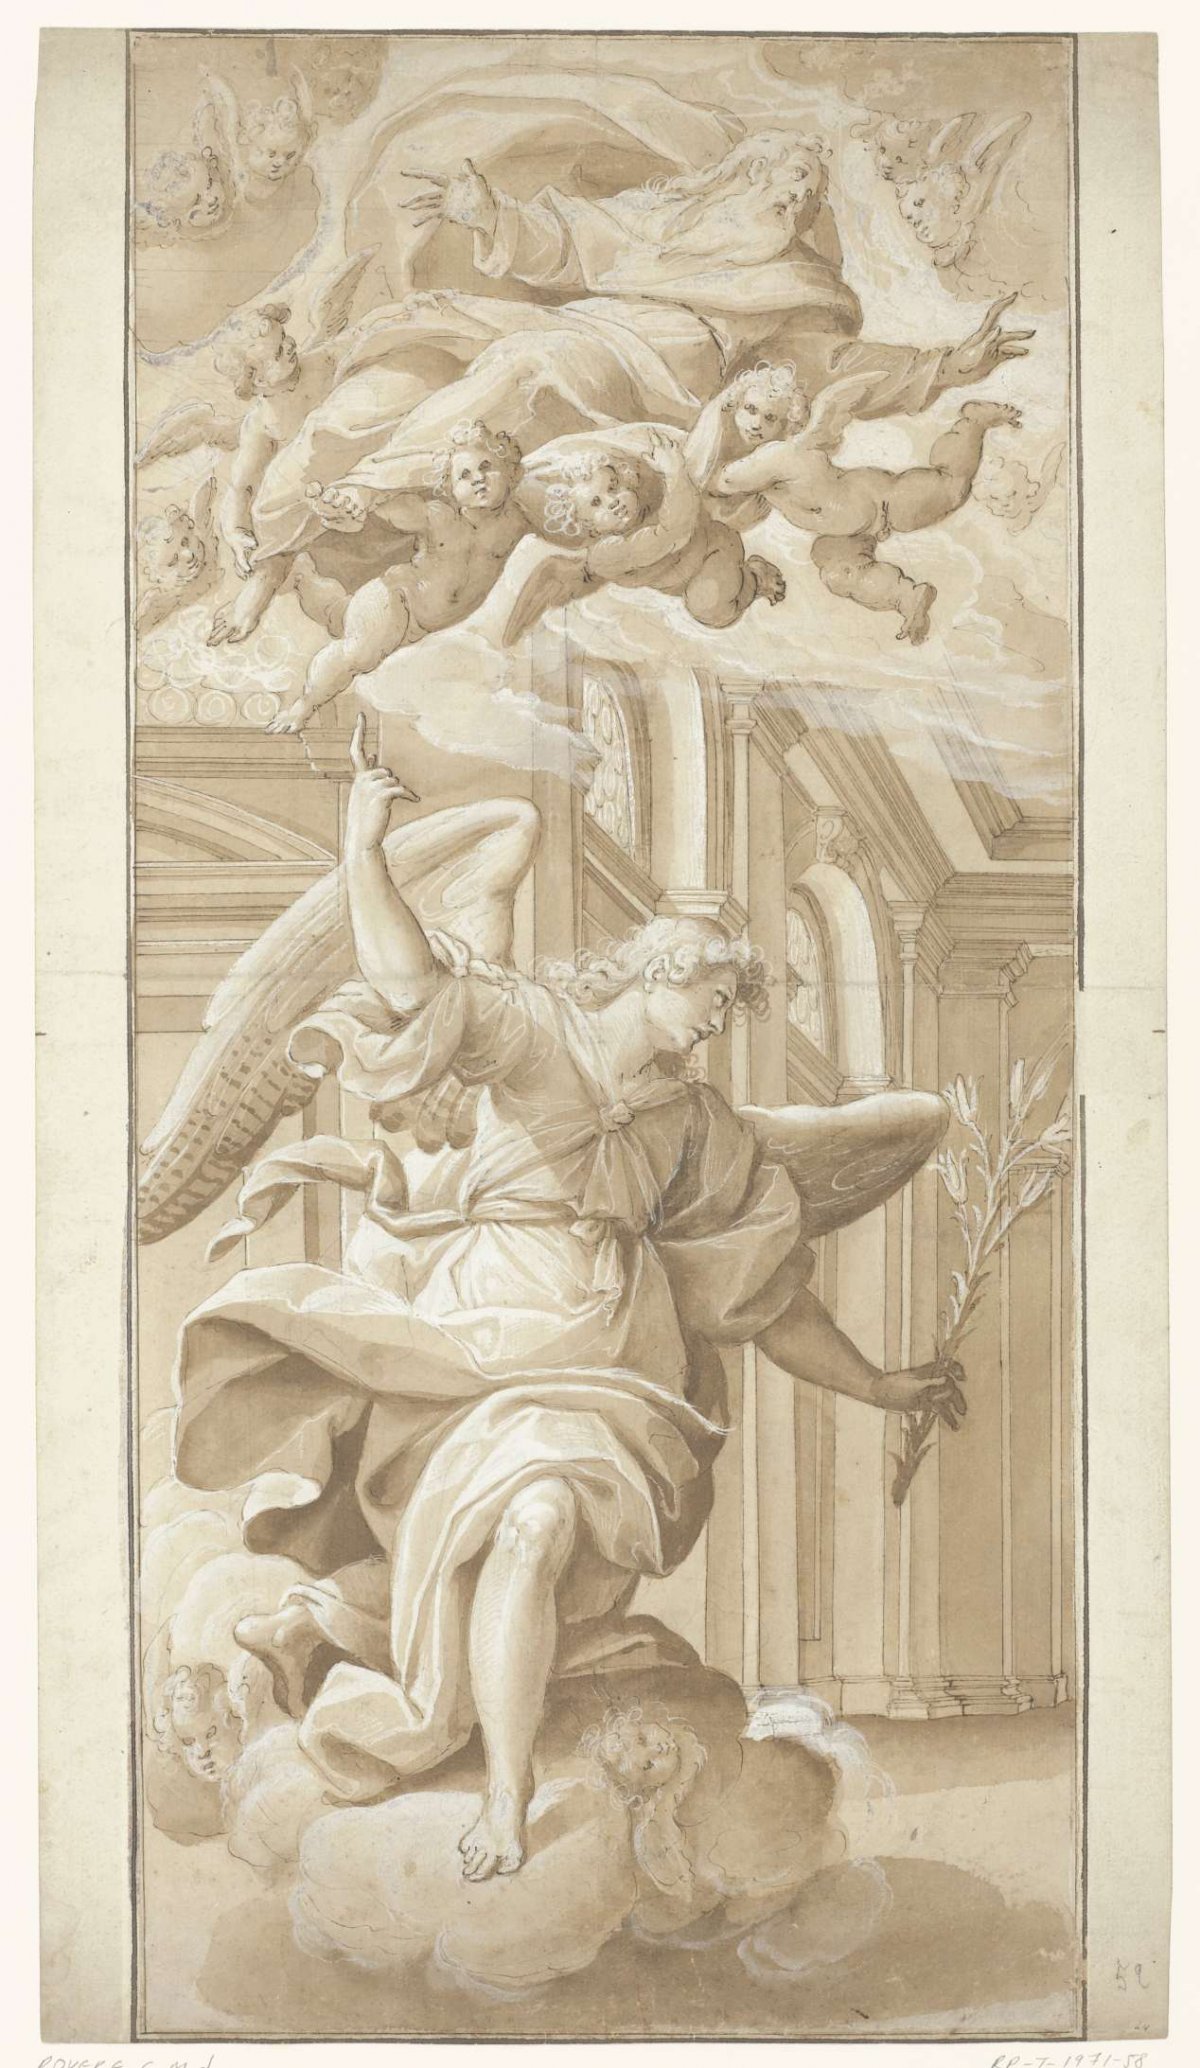 Proclaiming angel, treading on clouds, Giovanni Mauro della Rovere, 1585 - 1640